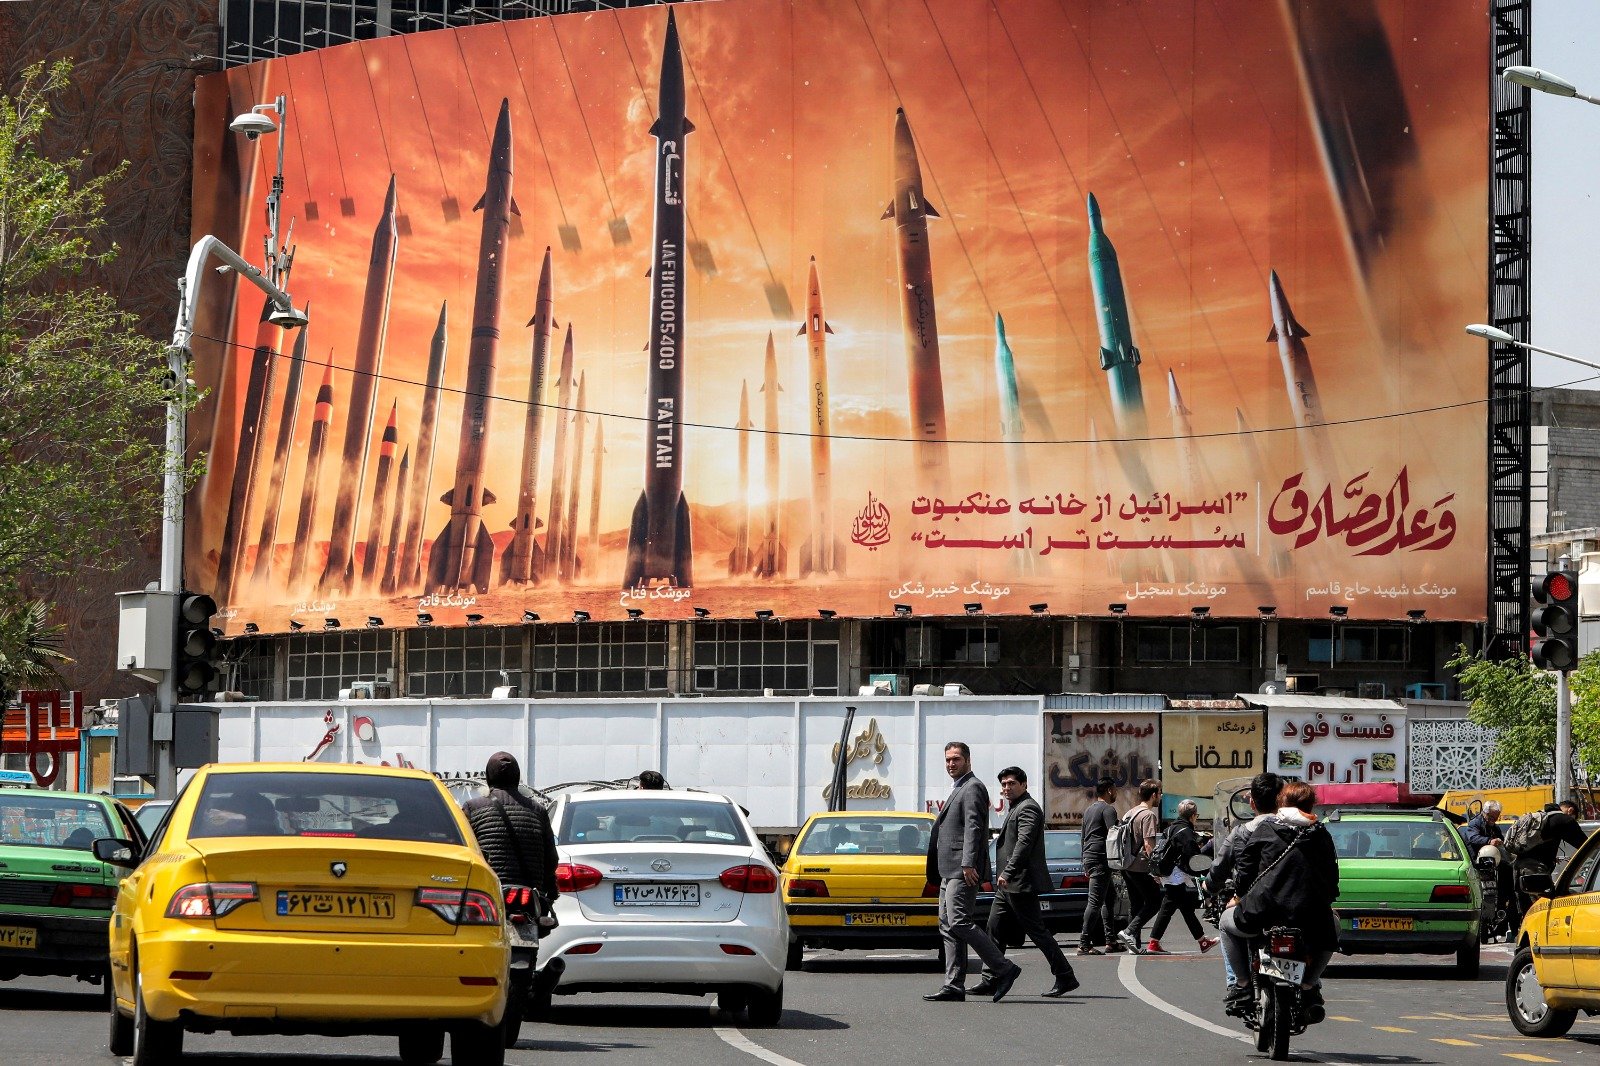 在德黑兰市中心的瓦莱亚斯广场，车辆驶过一块广告牌，广告牌上描绘了伊朗的弹道导弹，广告牌上用阿拉伯语写著“诚实的承诺”，用波斯语写著“以色列比蜘蛛网还要脆弱”。（图取自法新社）